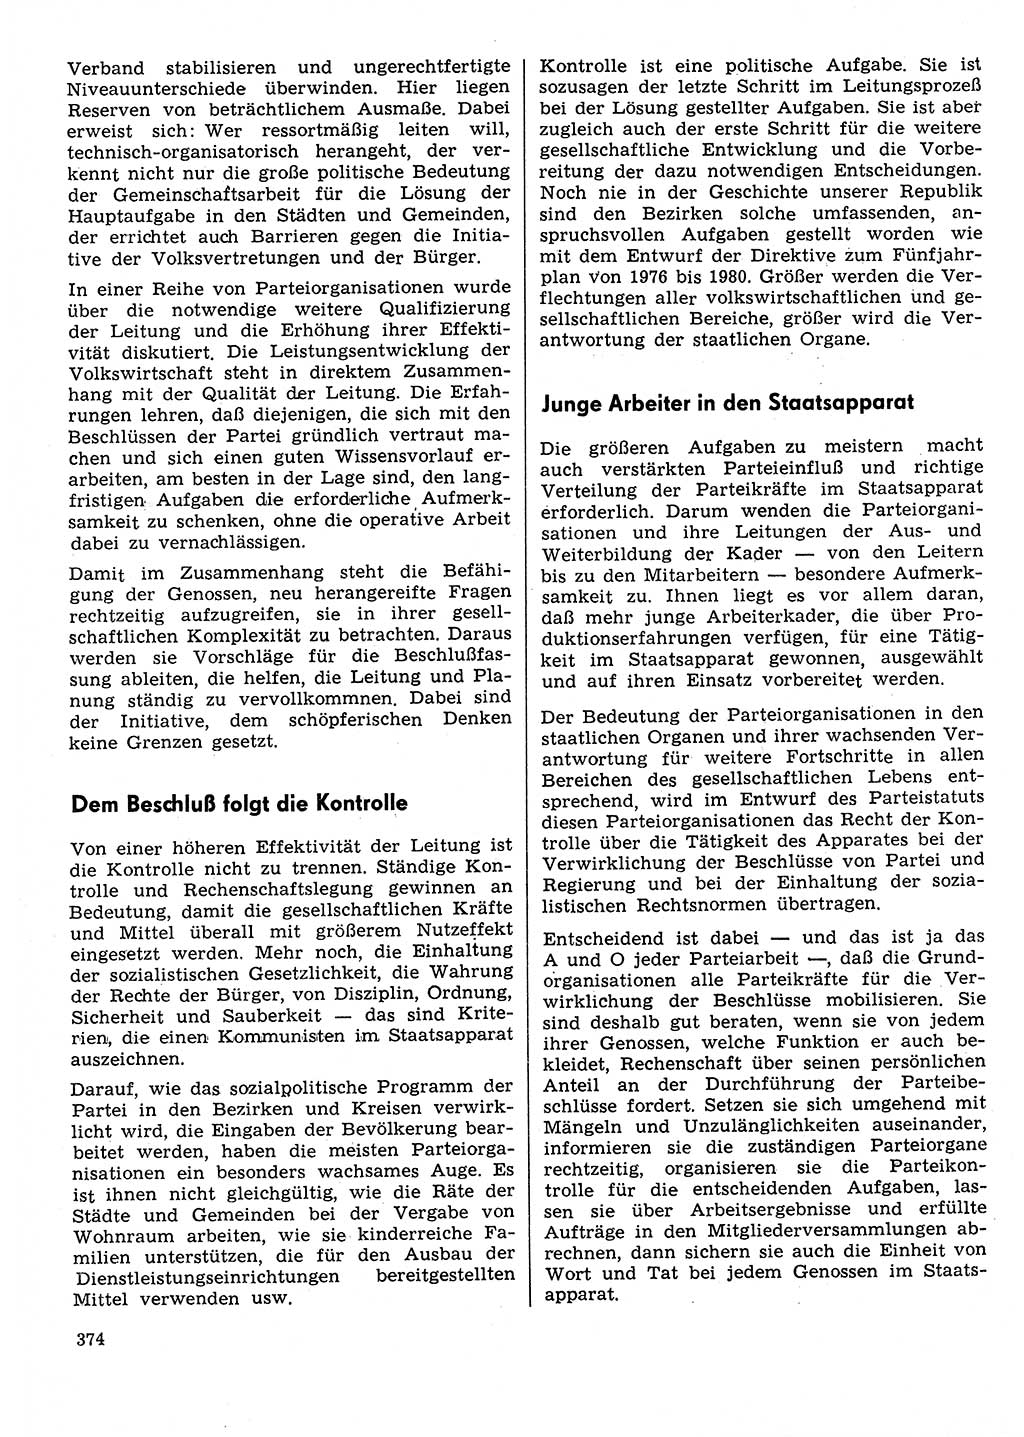 Neuer Weg (NW), Organ des Zentralkomitees (ZK) der SED (Sozialistische Einheitspartei Deutschlands) für Fragen des Parteilebens, 31. Jahrgang [Deutsche Demokratische Republik (DDR)] 1976, Seite 374 (NW ZK SED DDR 1976, S. 374)